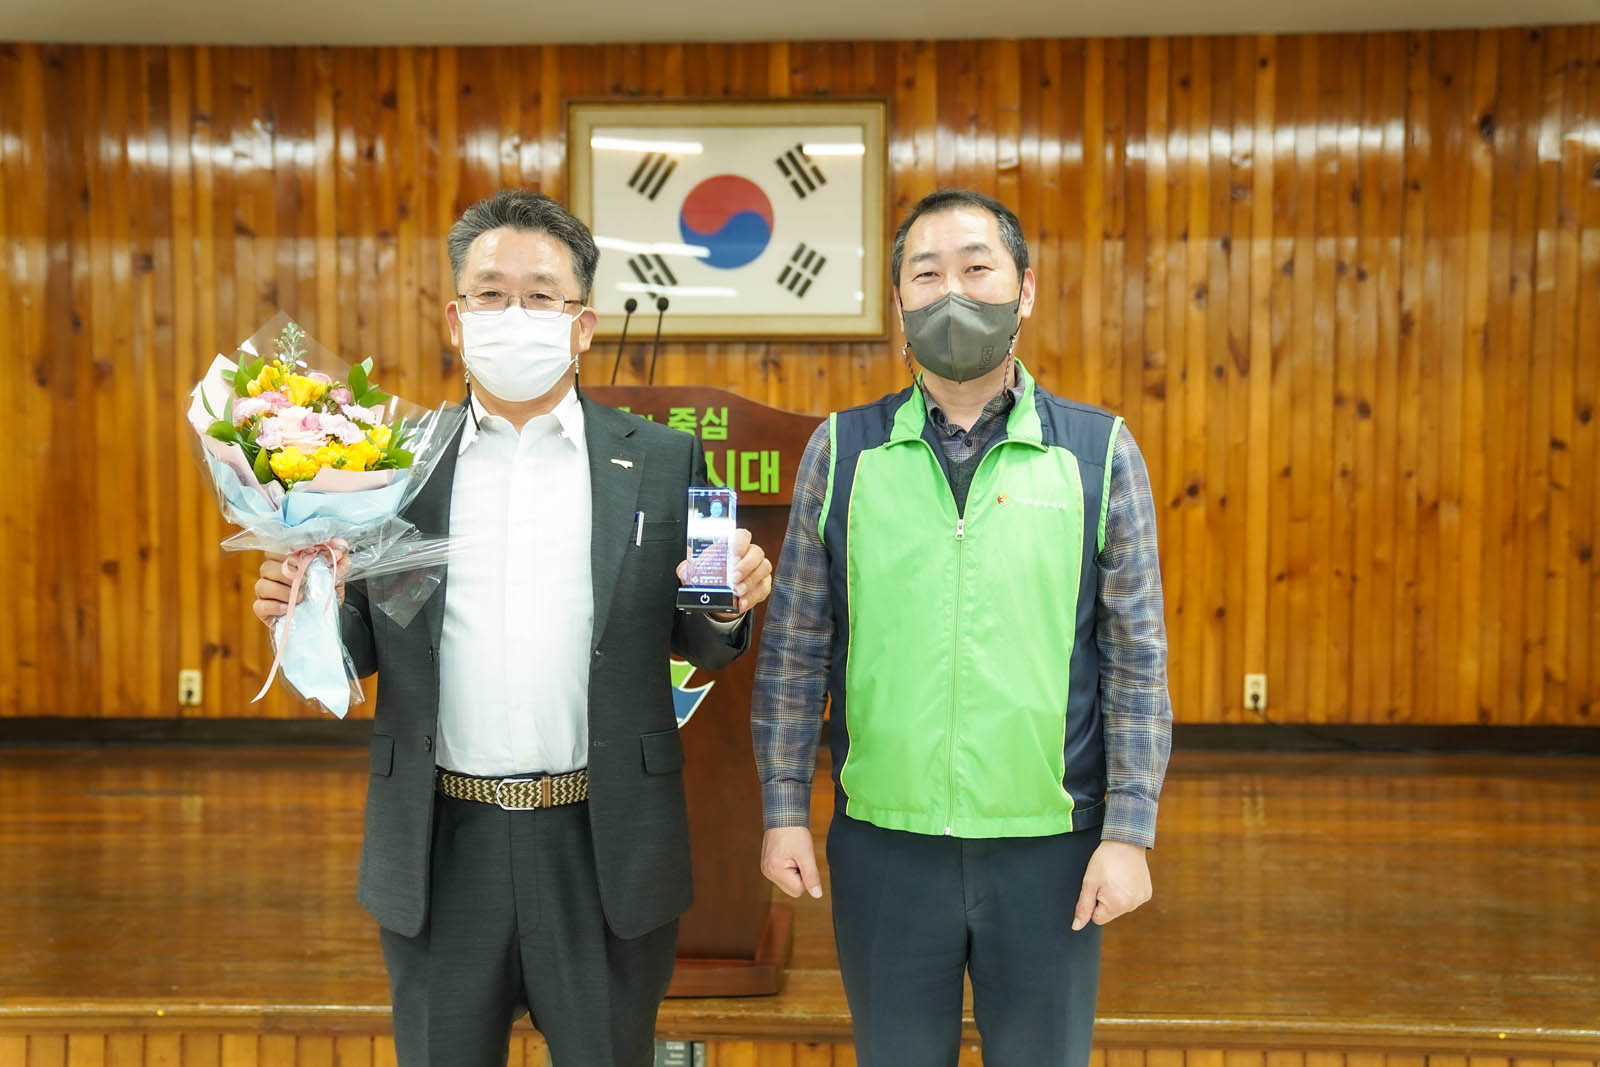 (03.31.회의실) 목포시공무원노조 두명이 꽃다발과 상을 들고 기념촬영모습